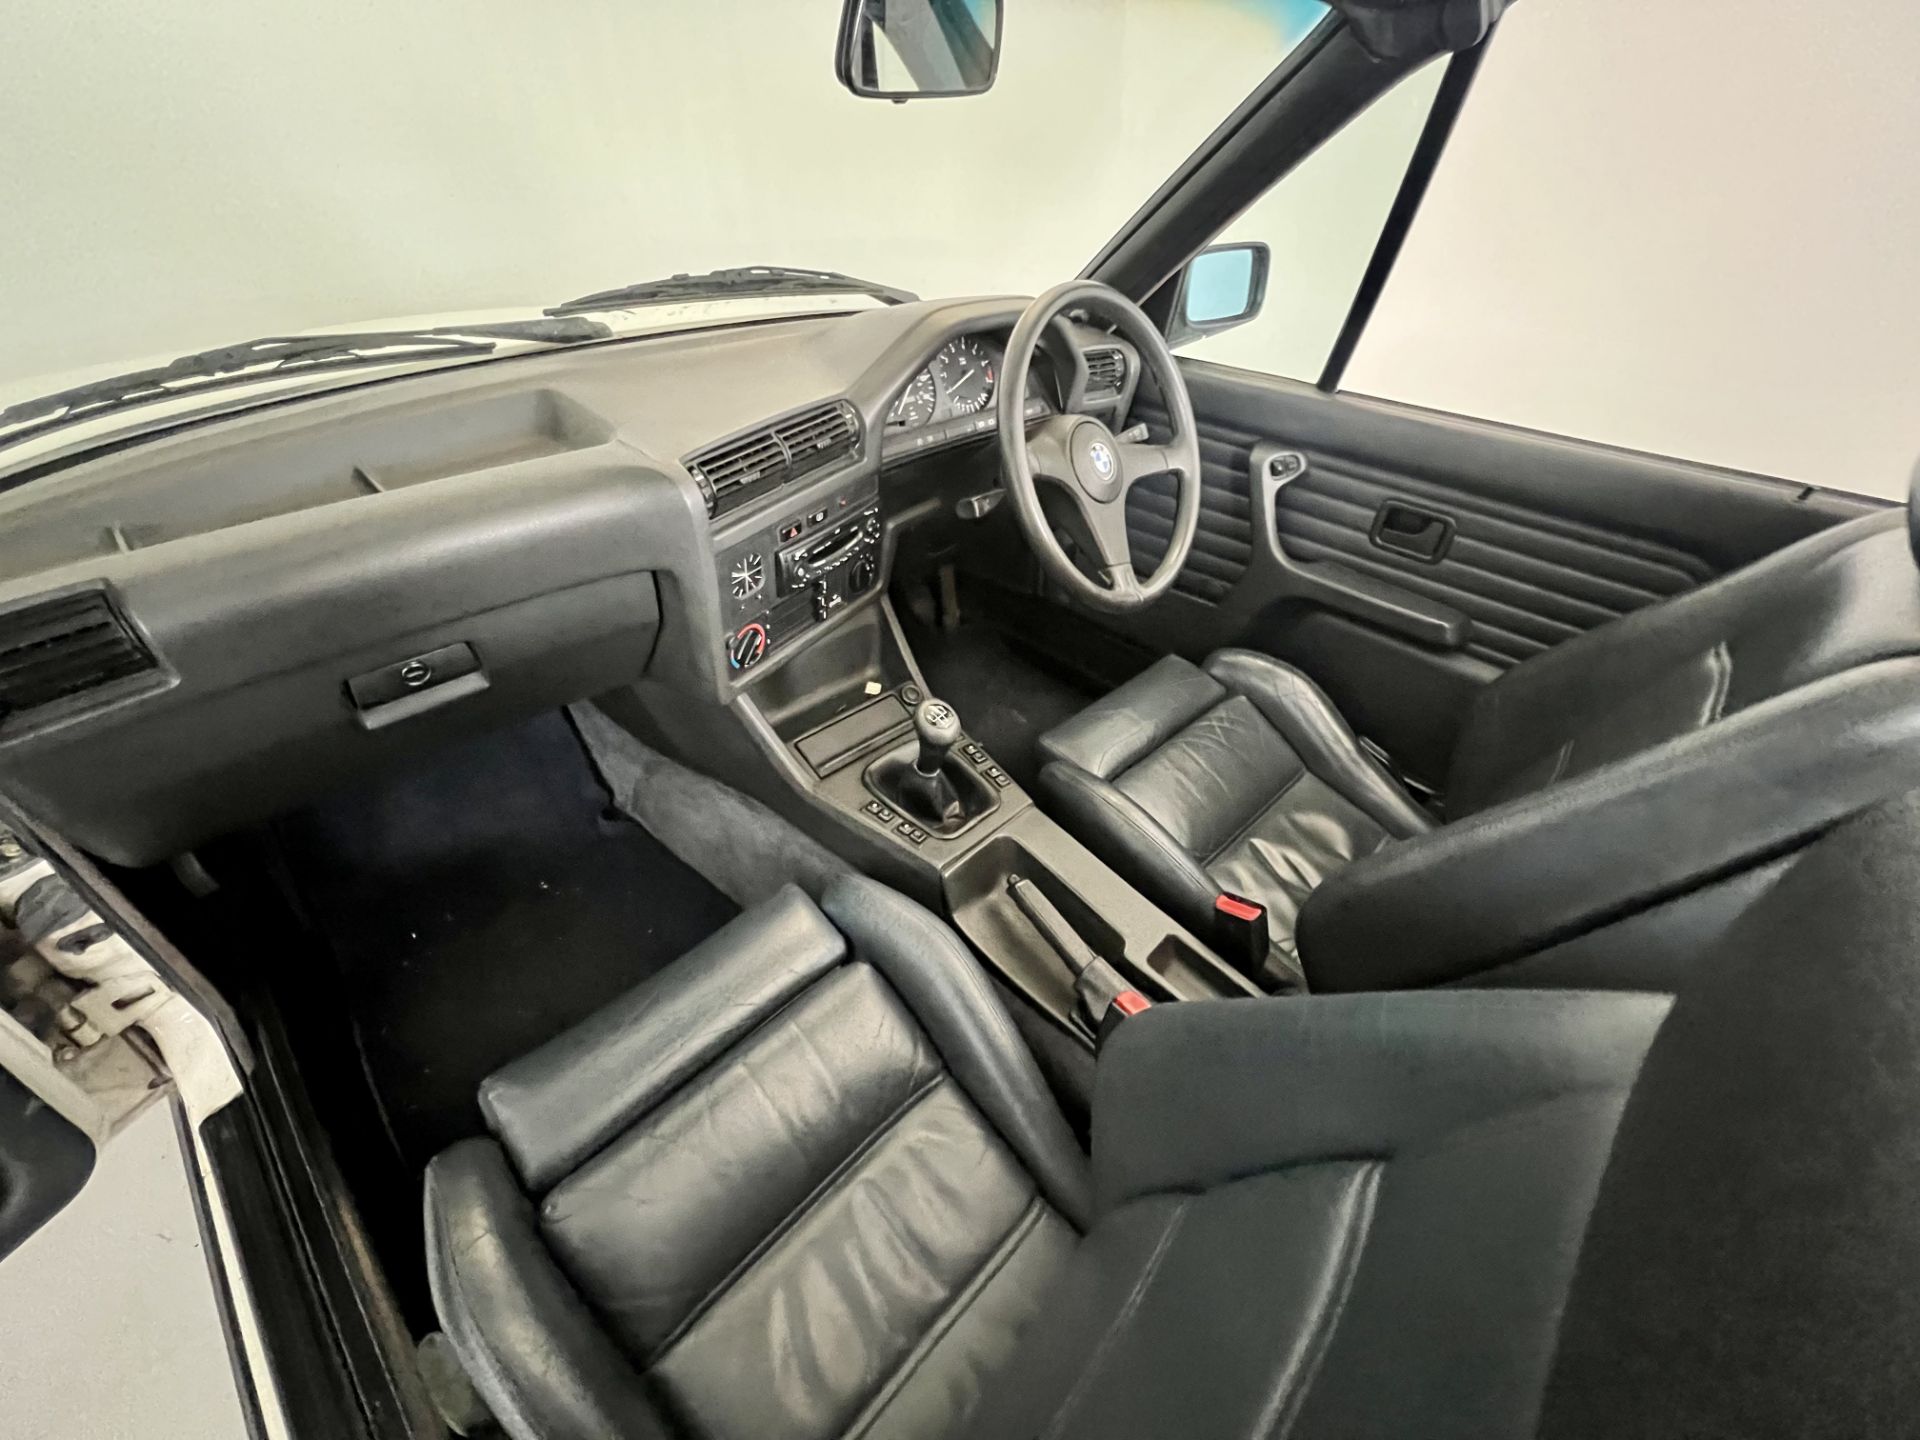 BMW 325i Cabriolet - Image 24 of 32